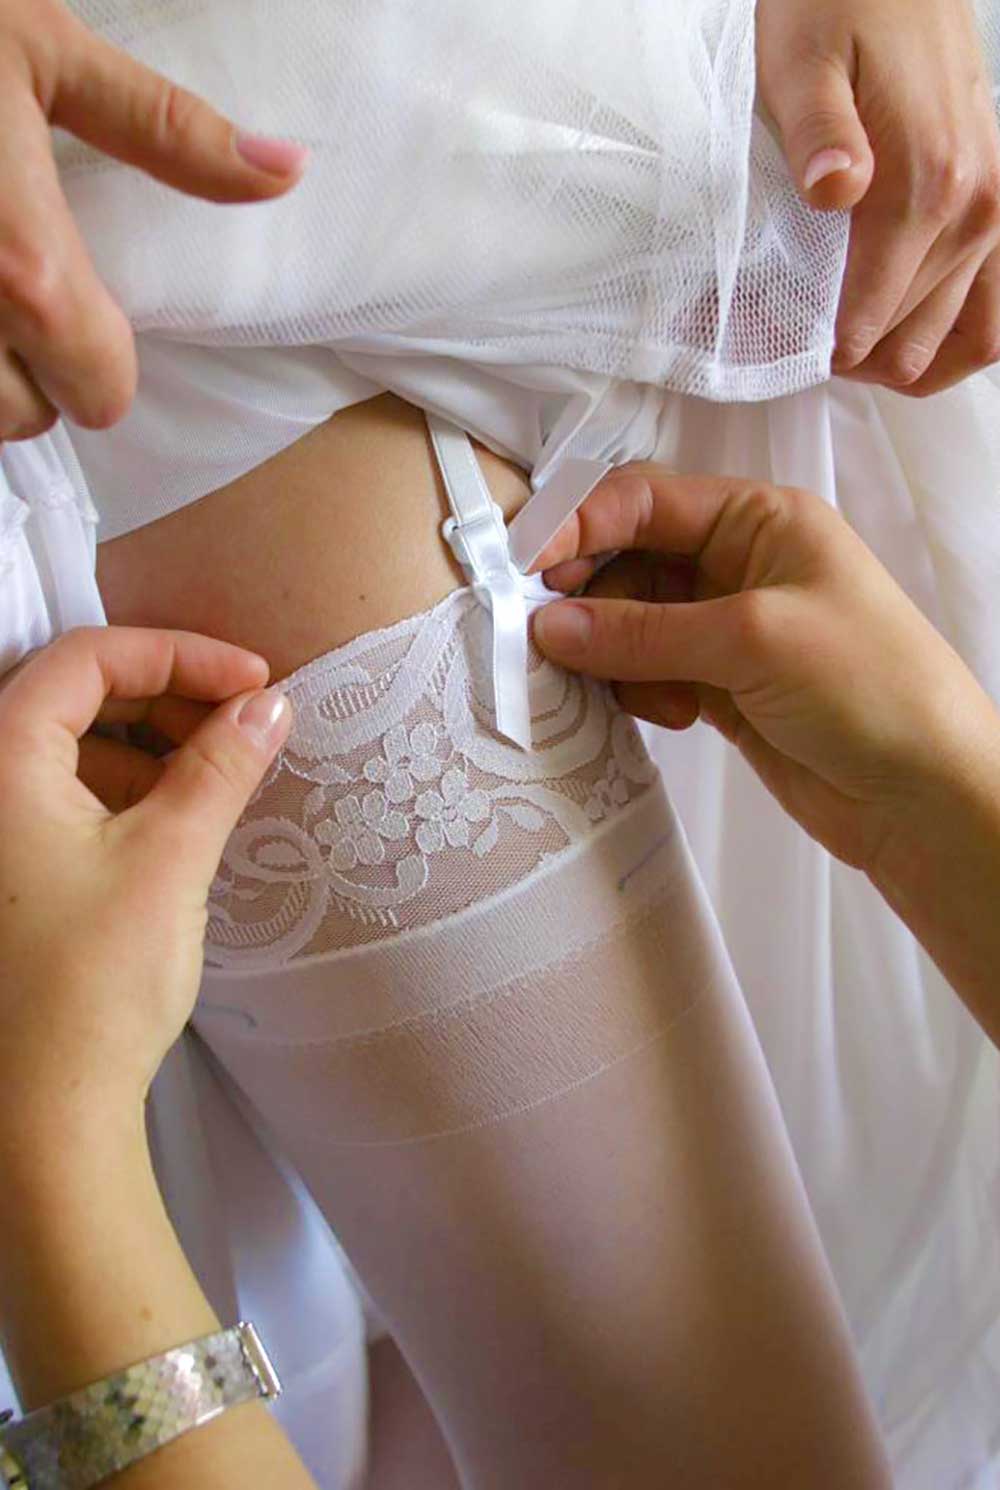 Details de la mariee lors des preparatifs du mariage